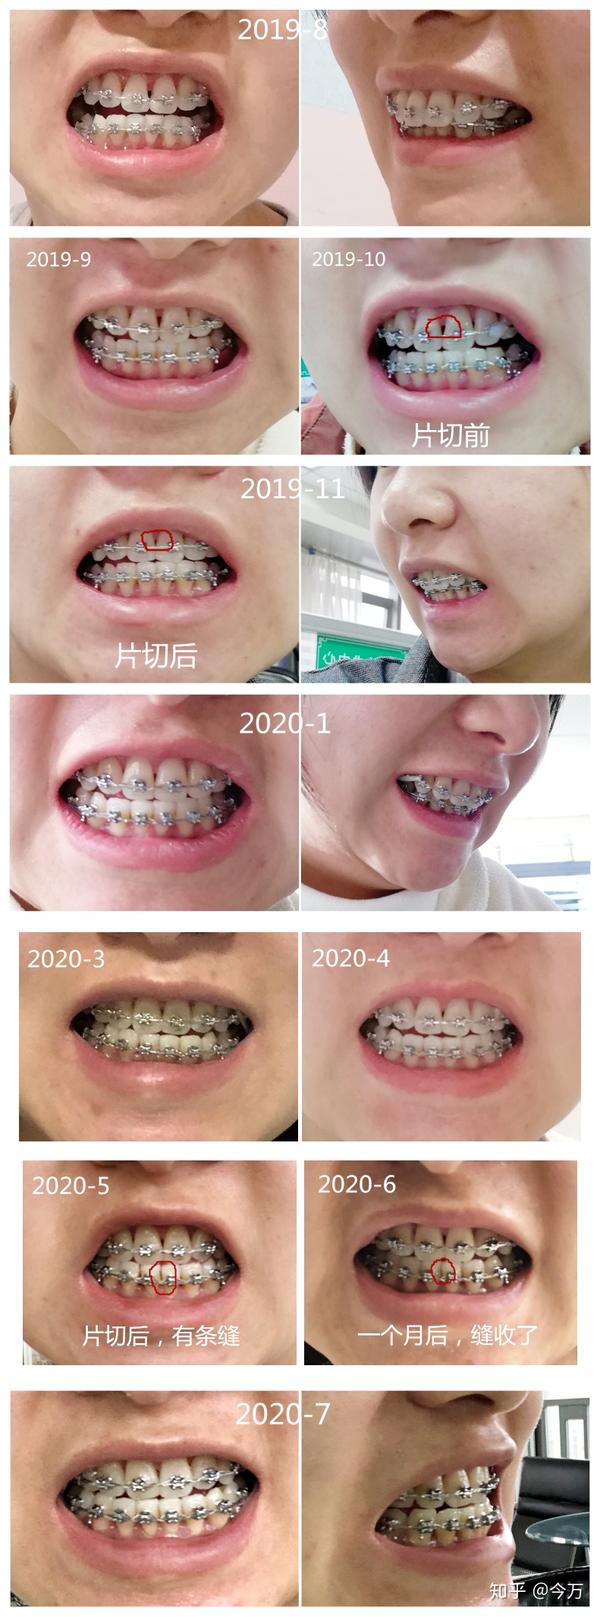 24岁牙齿矫正过程,照片对比经验分享